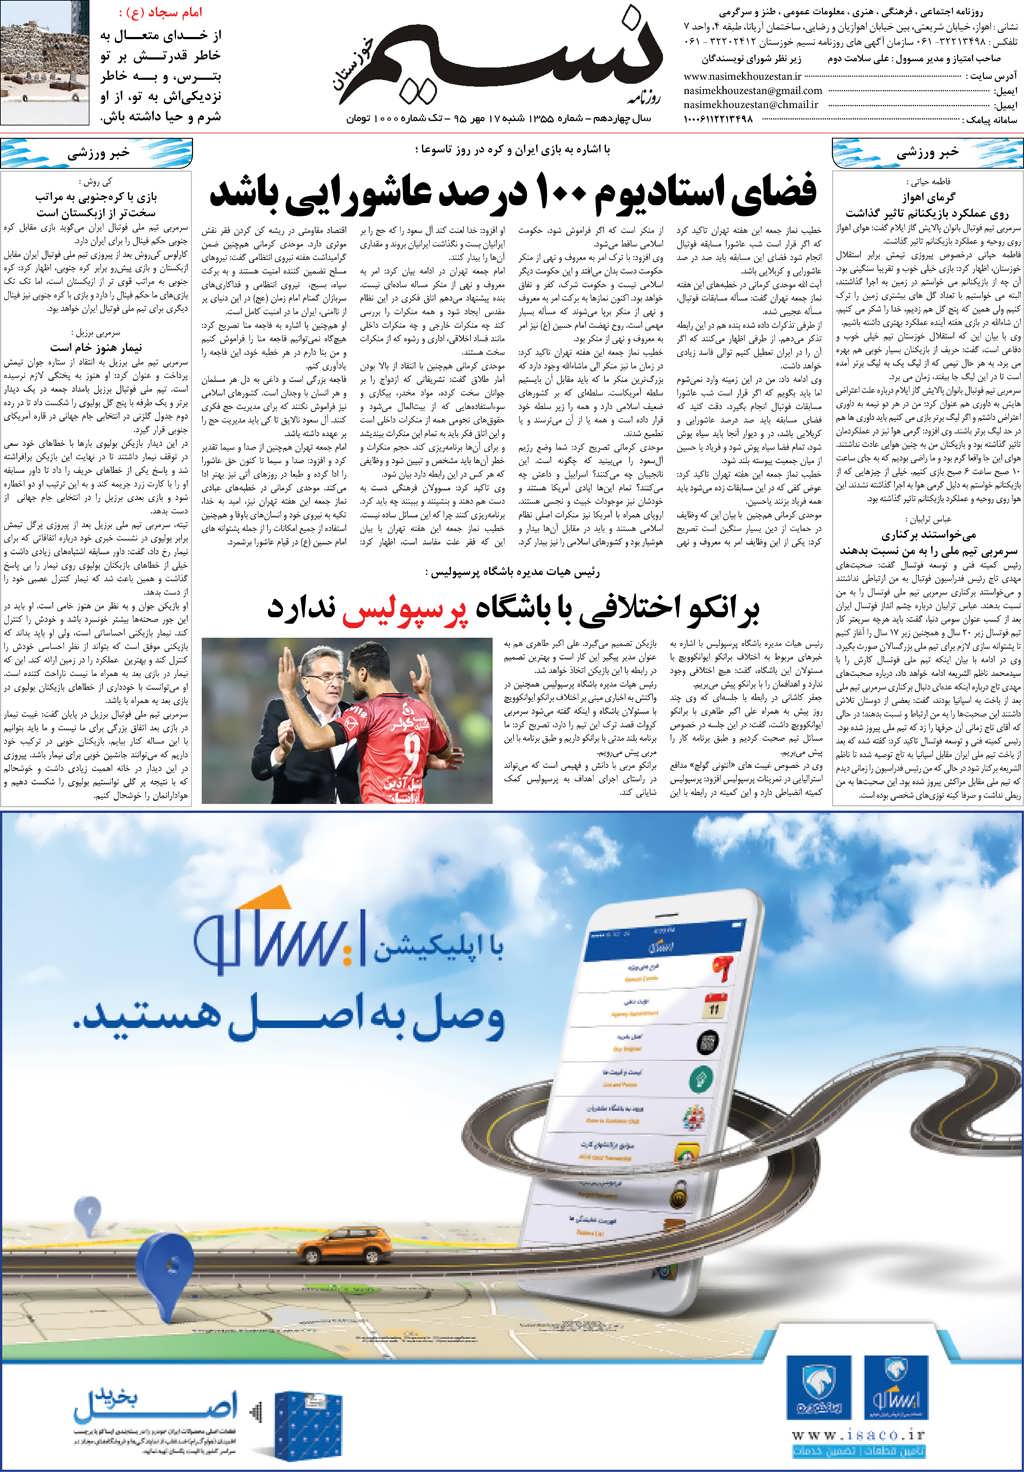 صفحه آخر روزنامه نسیم شماره 1355